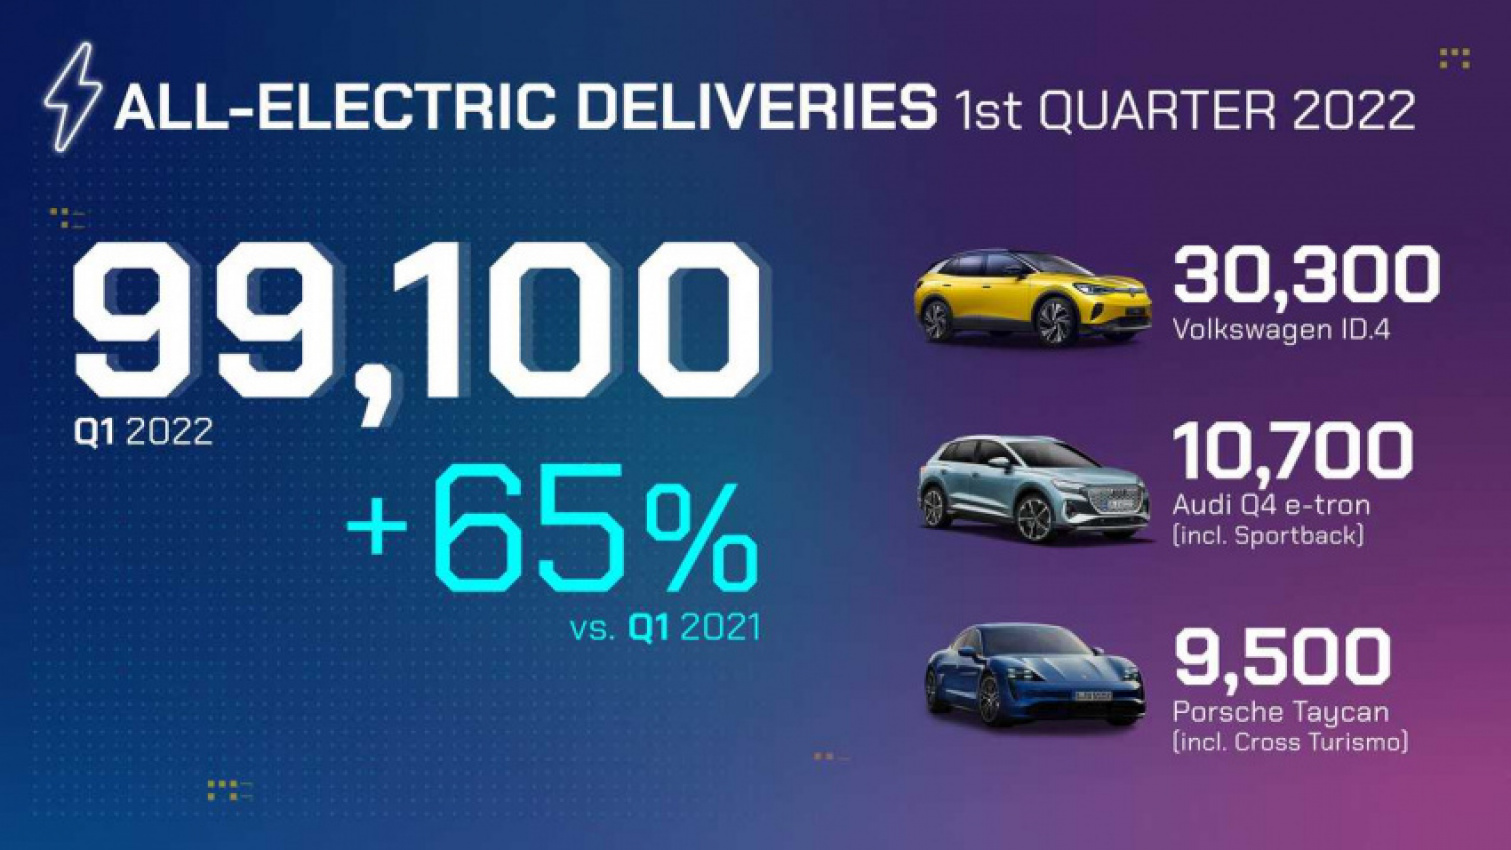 autos, cars, evs, volkswagen, volkswagen group global bev sales in q1 2022: almost 100,000